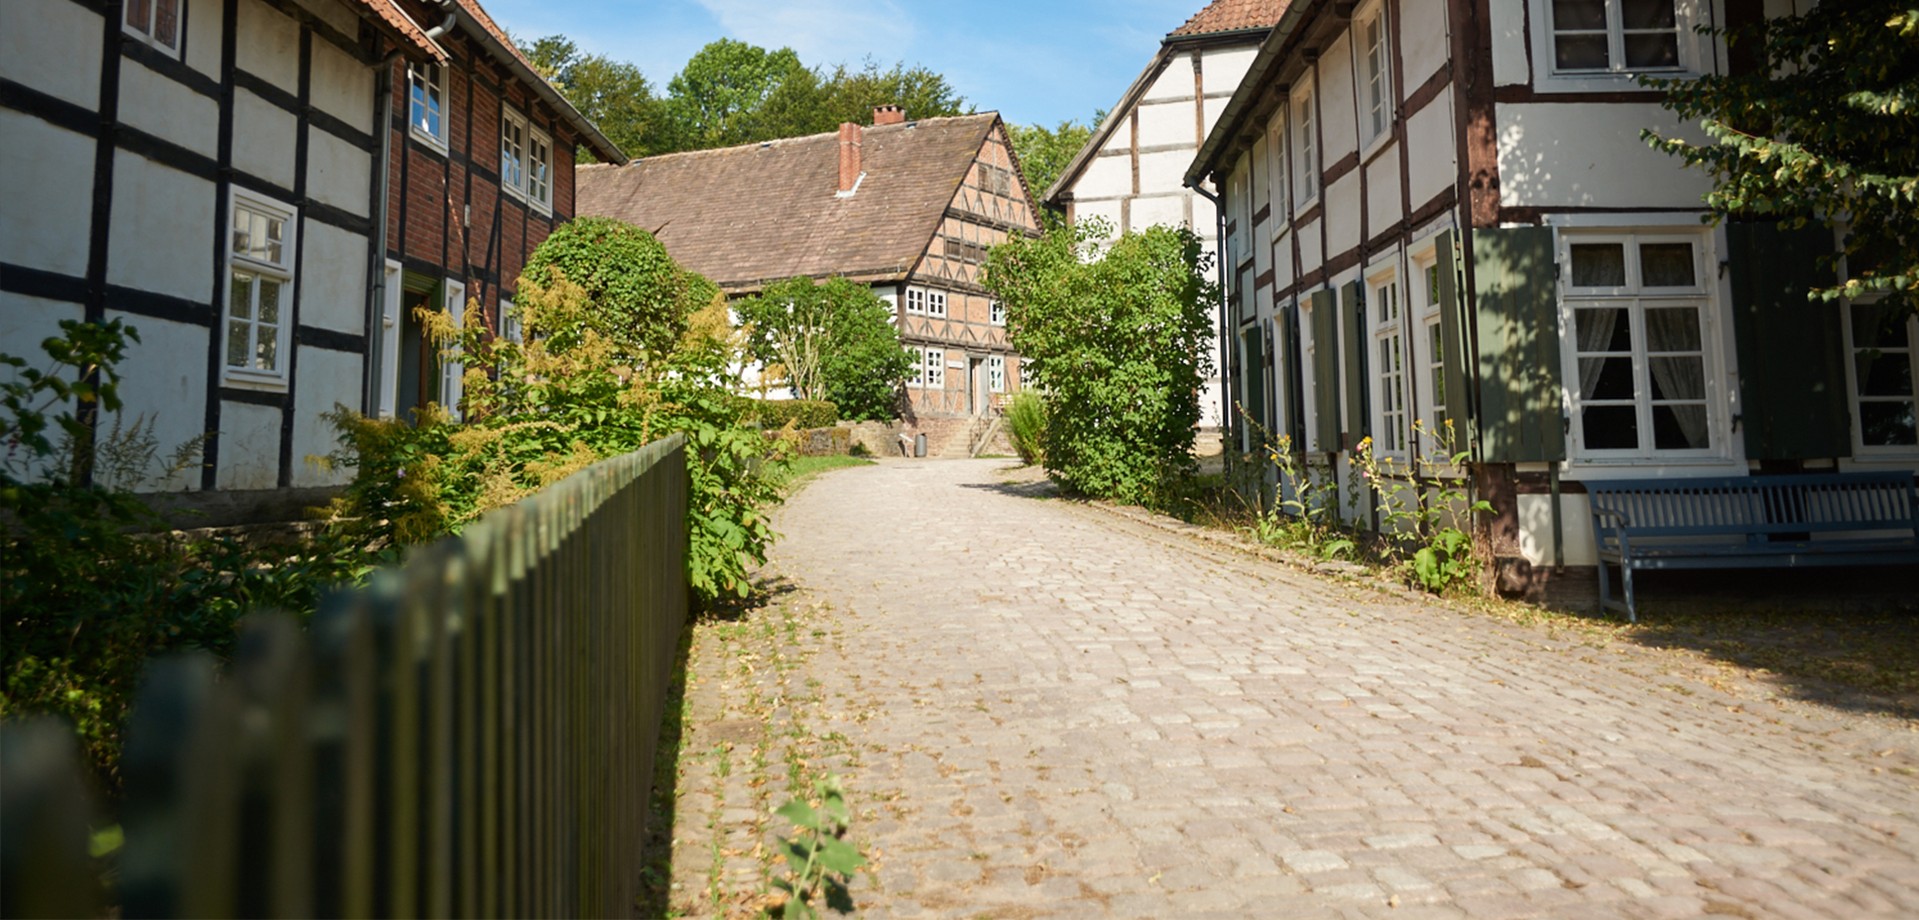 Einen Weg im Paderborner Dorf zwischen historischen Häusern.